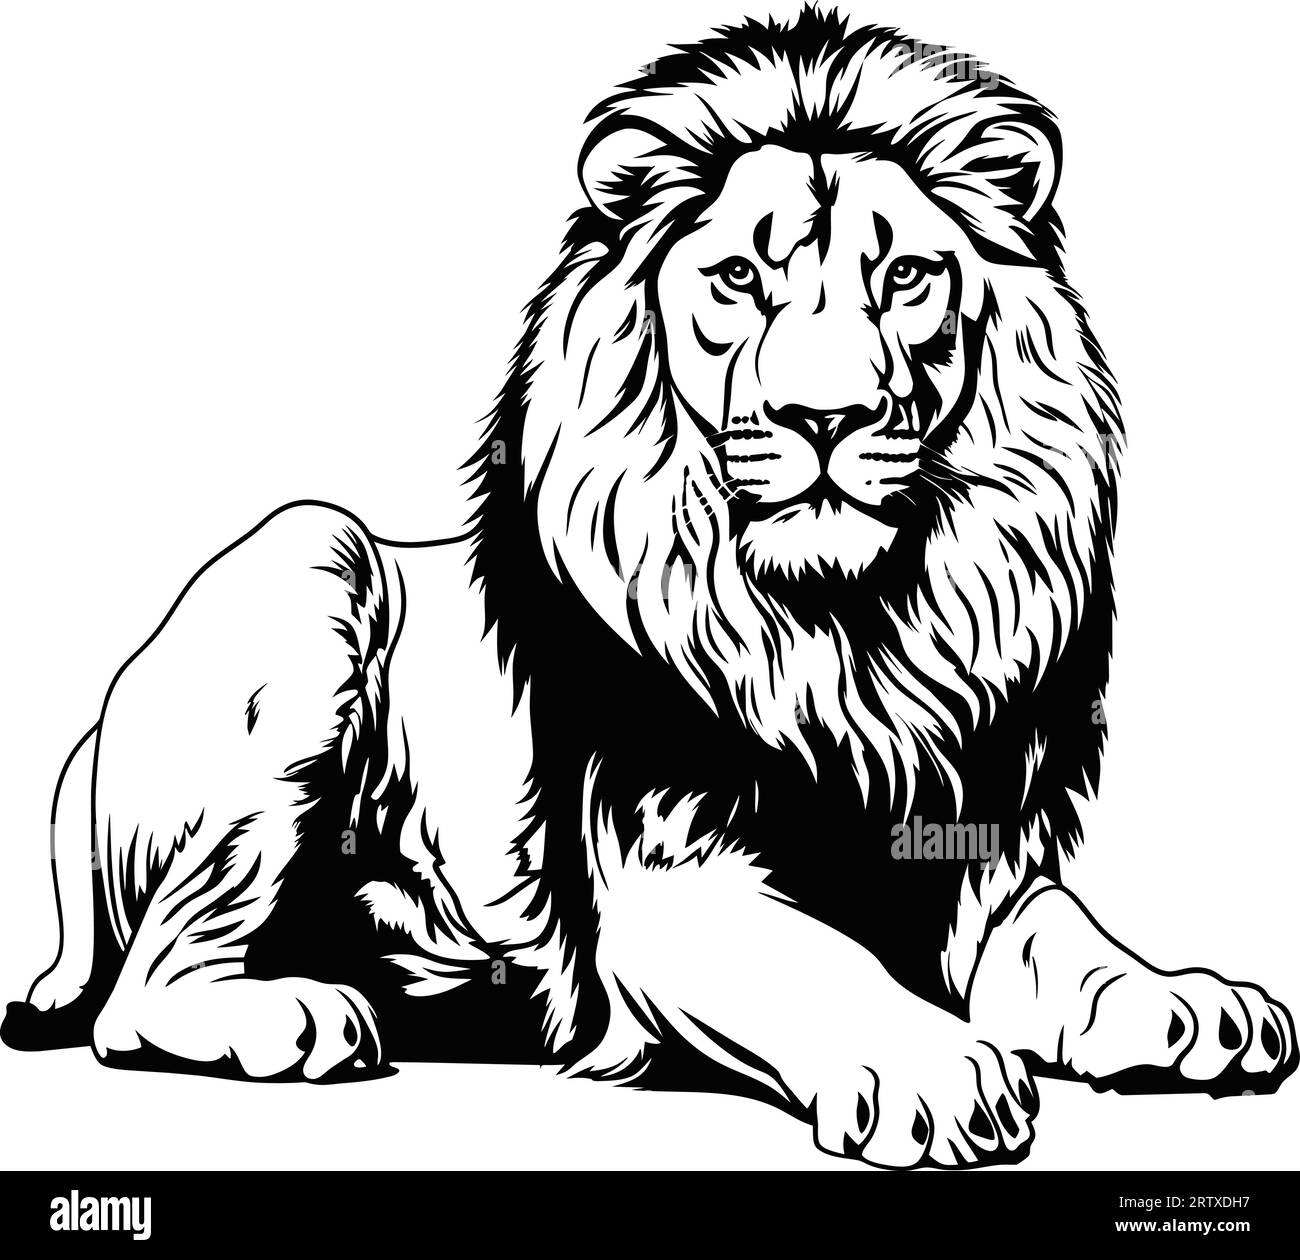 Incisione vintage, leone isolato, king set illustrativo, schizzo a inchiostro. Africa sfondo di gatto selvatico disegno della silhouette di animale. Vettore disegnato a mano in bianco e nero Illustrazione Vettoriale